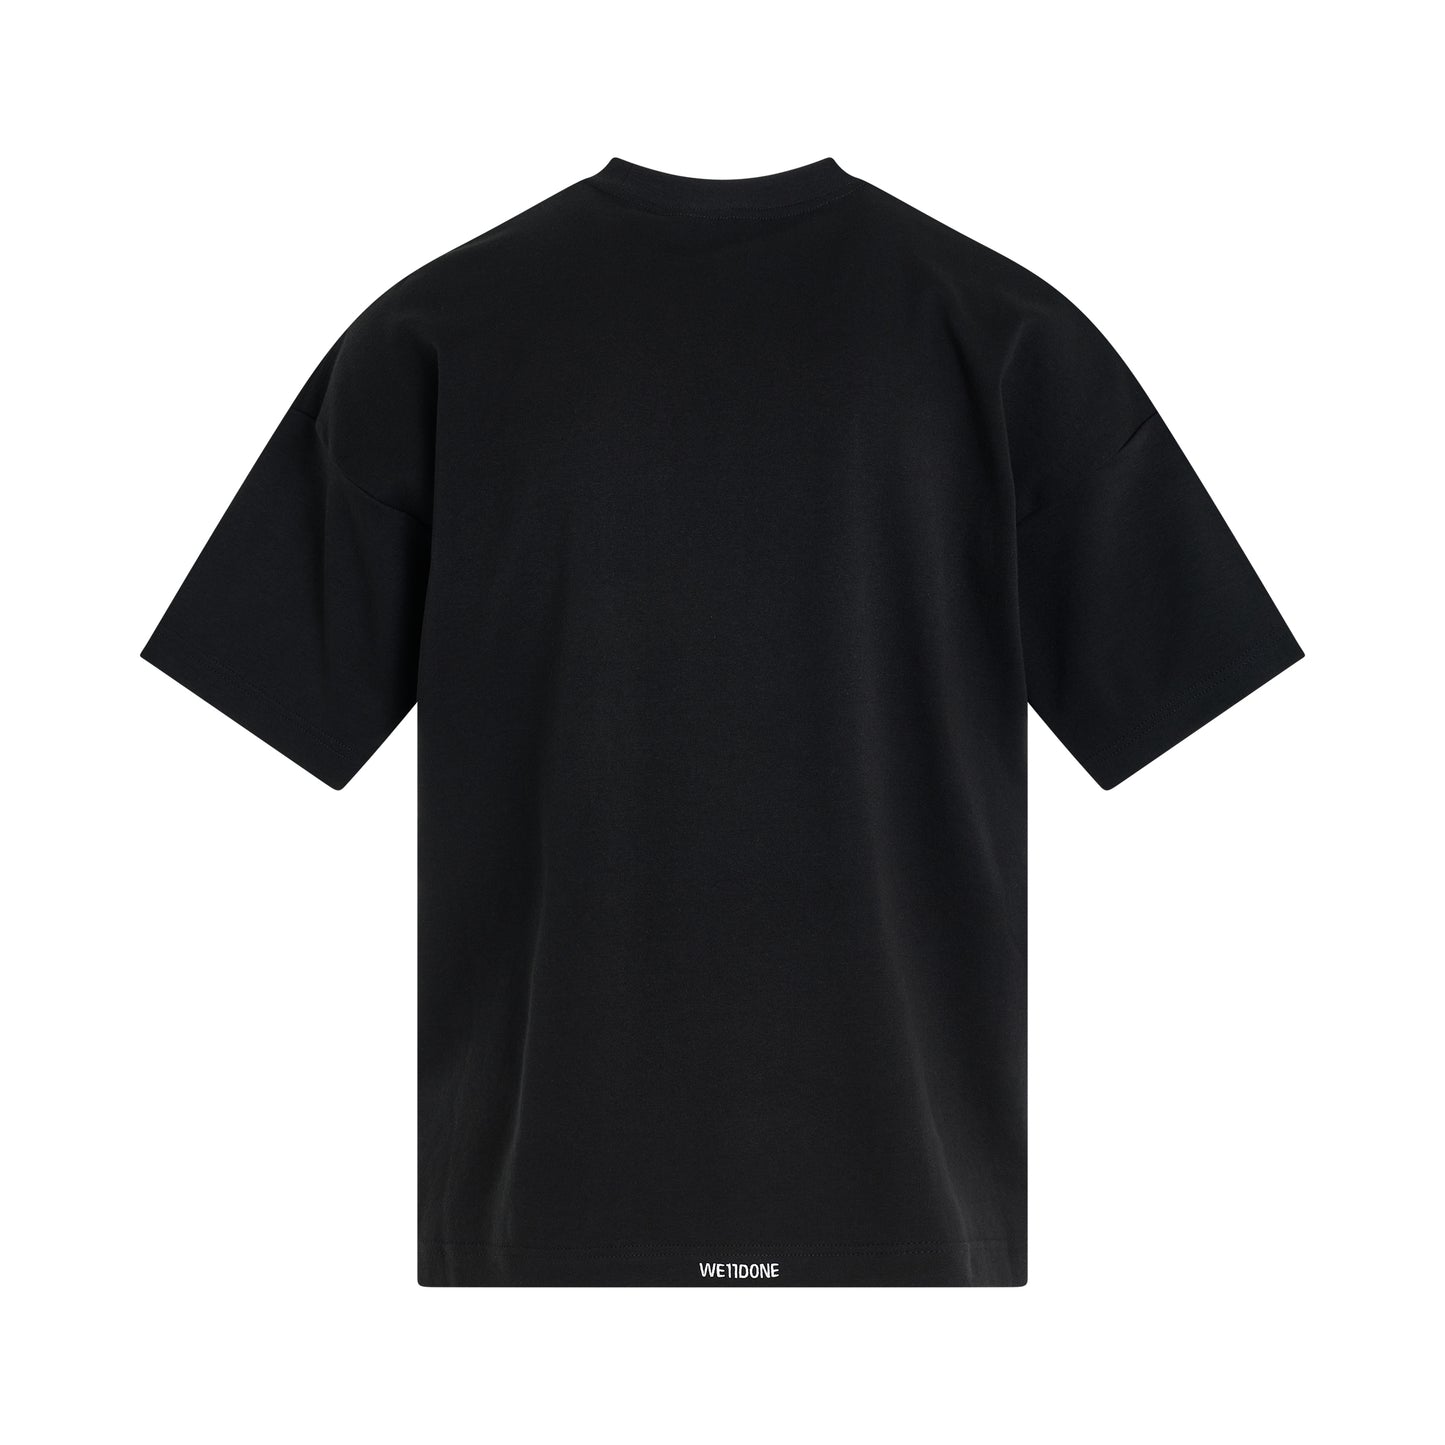 Spine Skull Print T-Shirt in Black